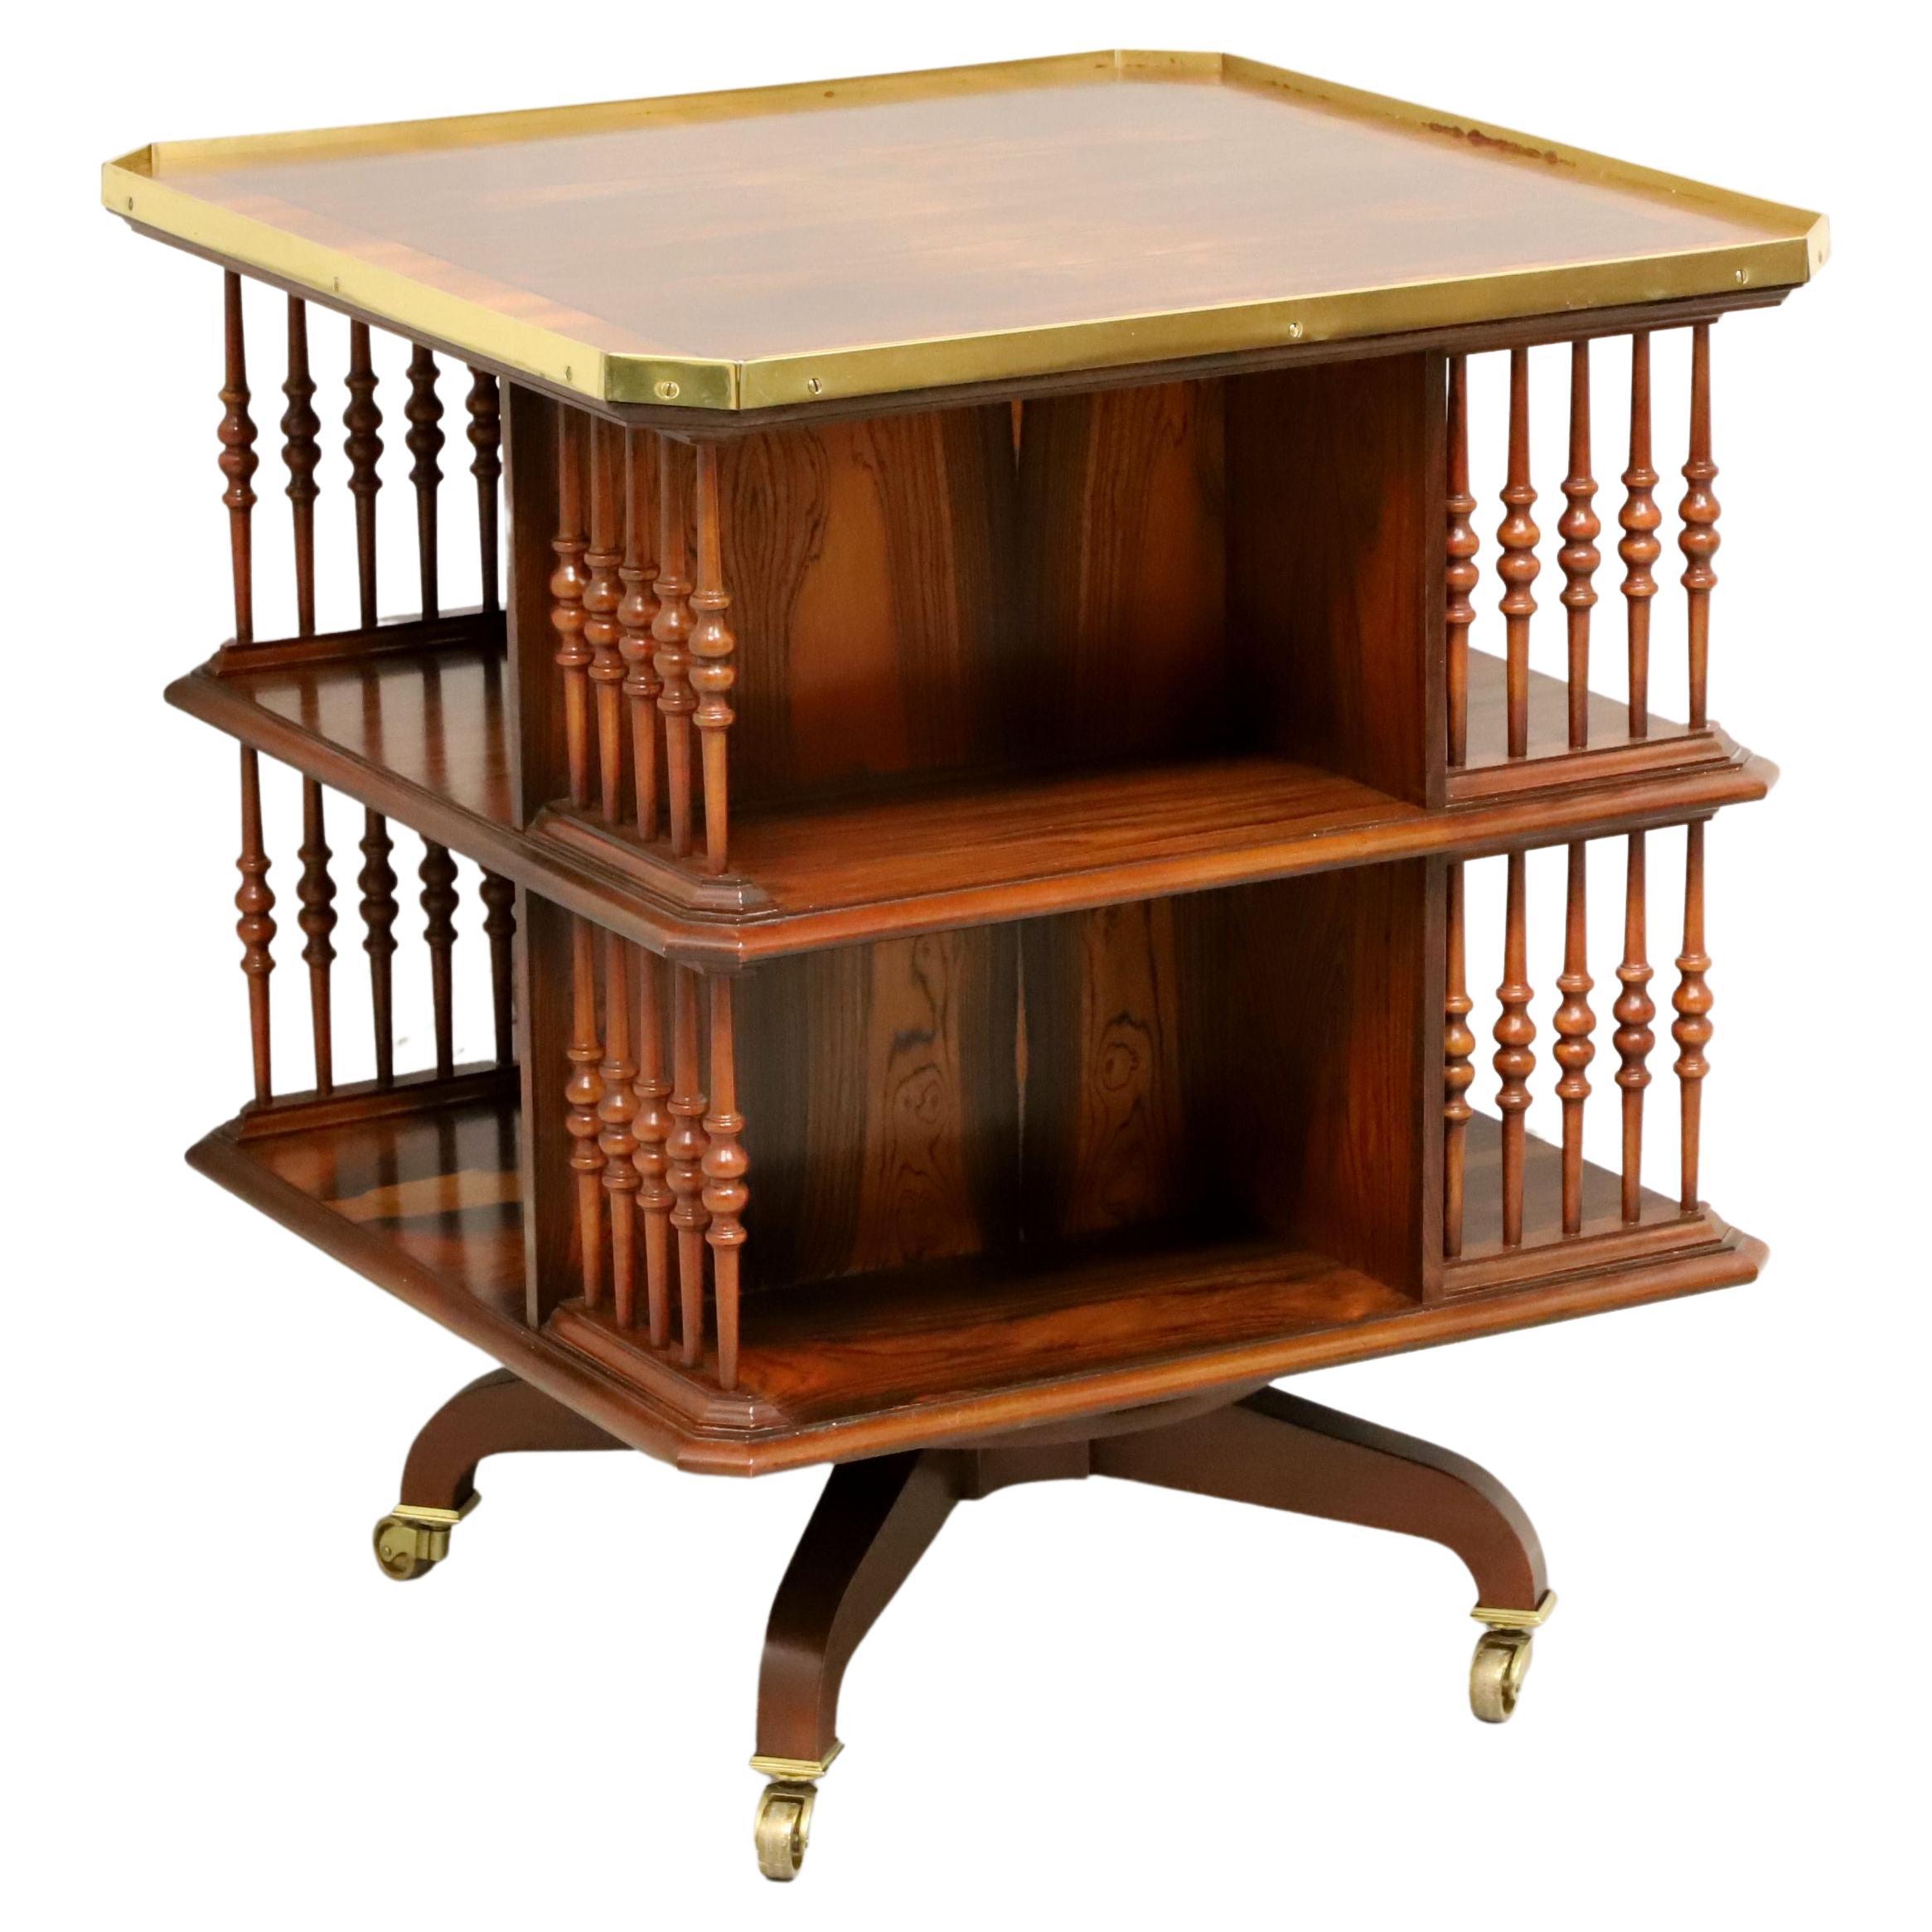 BAKER Stately Homes - Table d'appoint bibliothèque tournante en bois de rose de style Régence